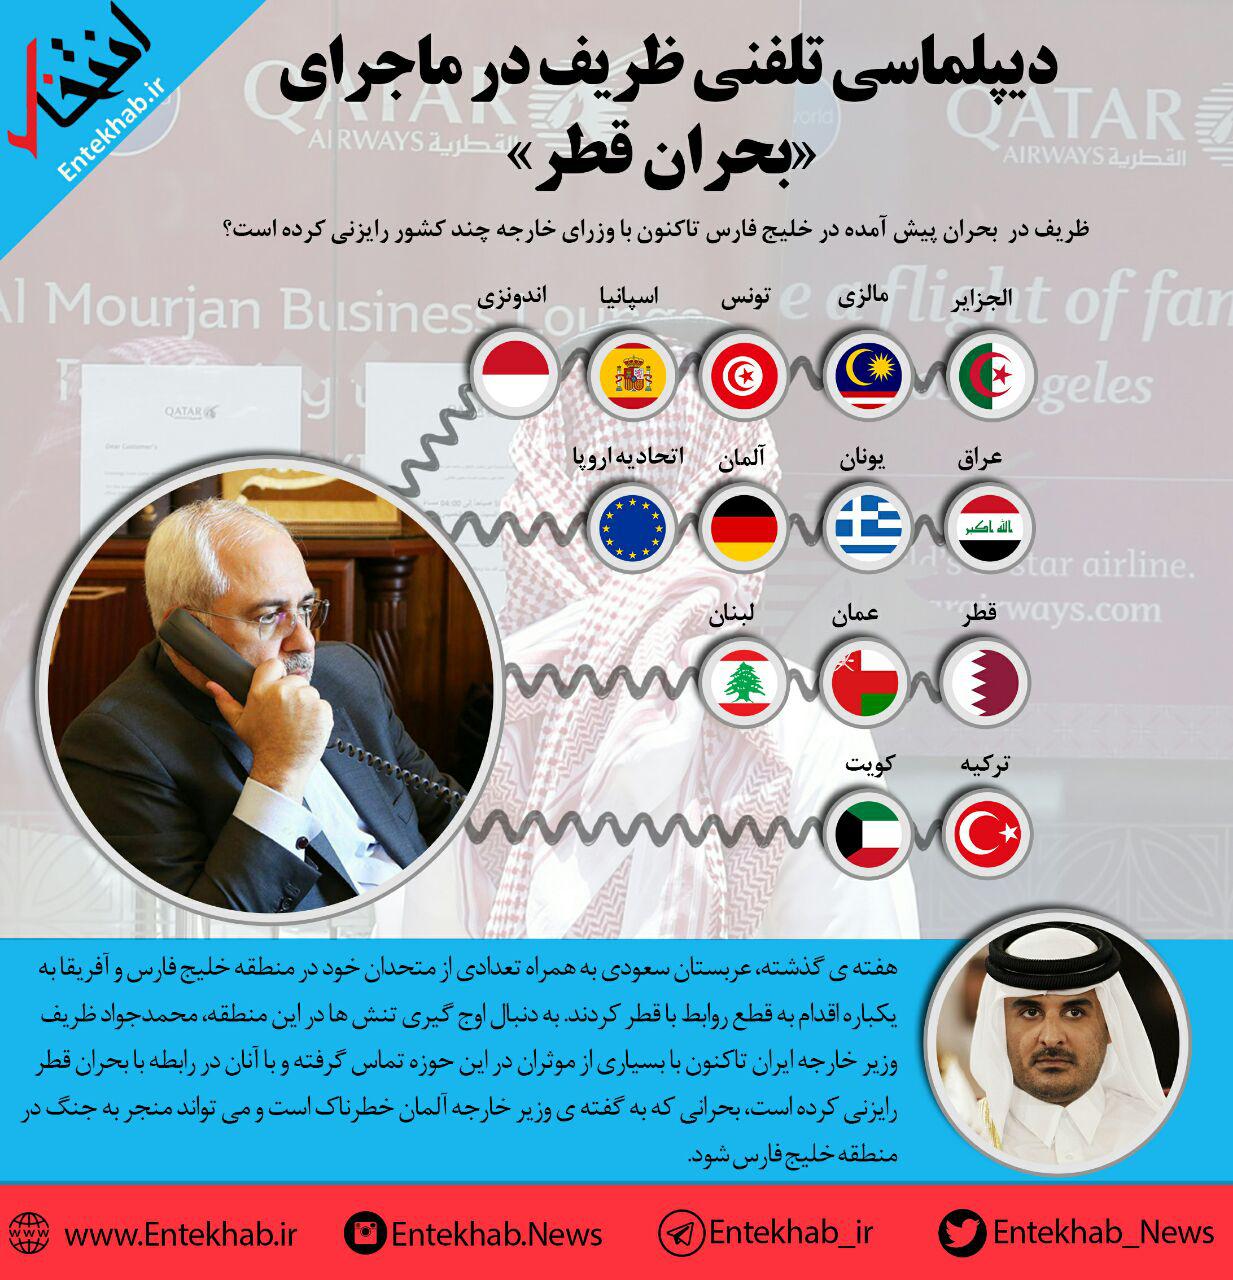 اینفوگرافی:ظریف در ماجرای بحران قطر تاکنون با چند وزیر خارجه مذاکره کرده است؟